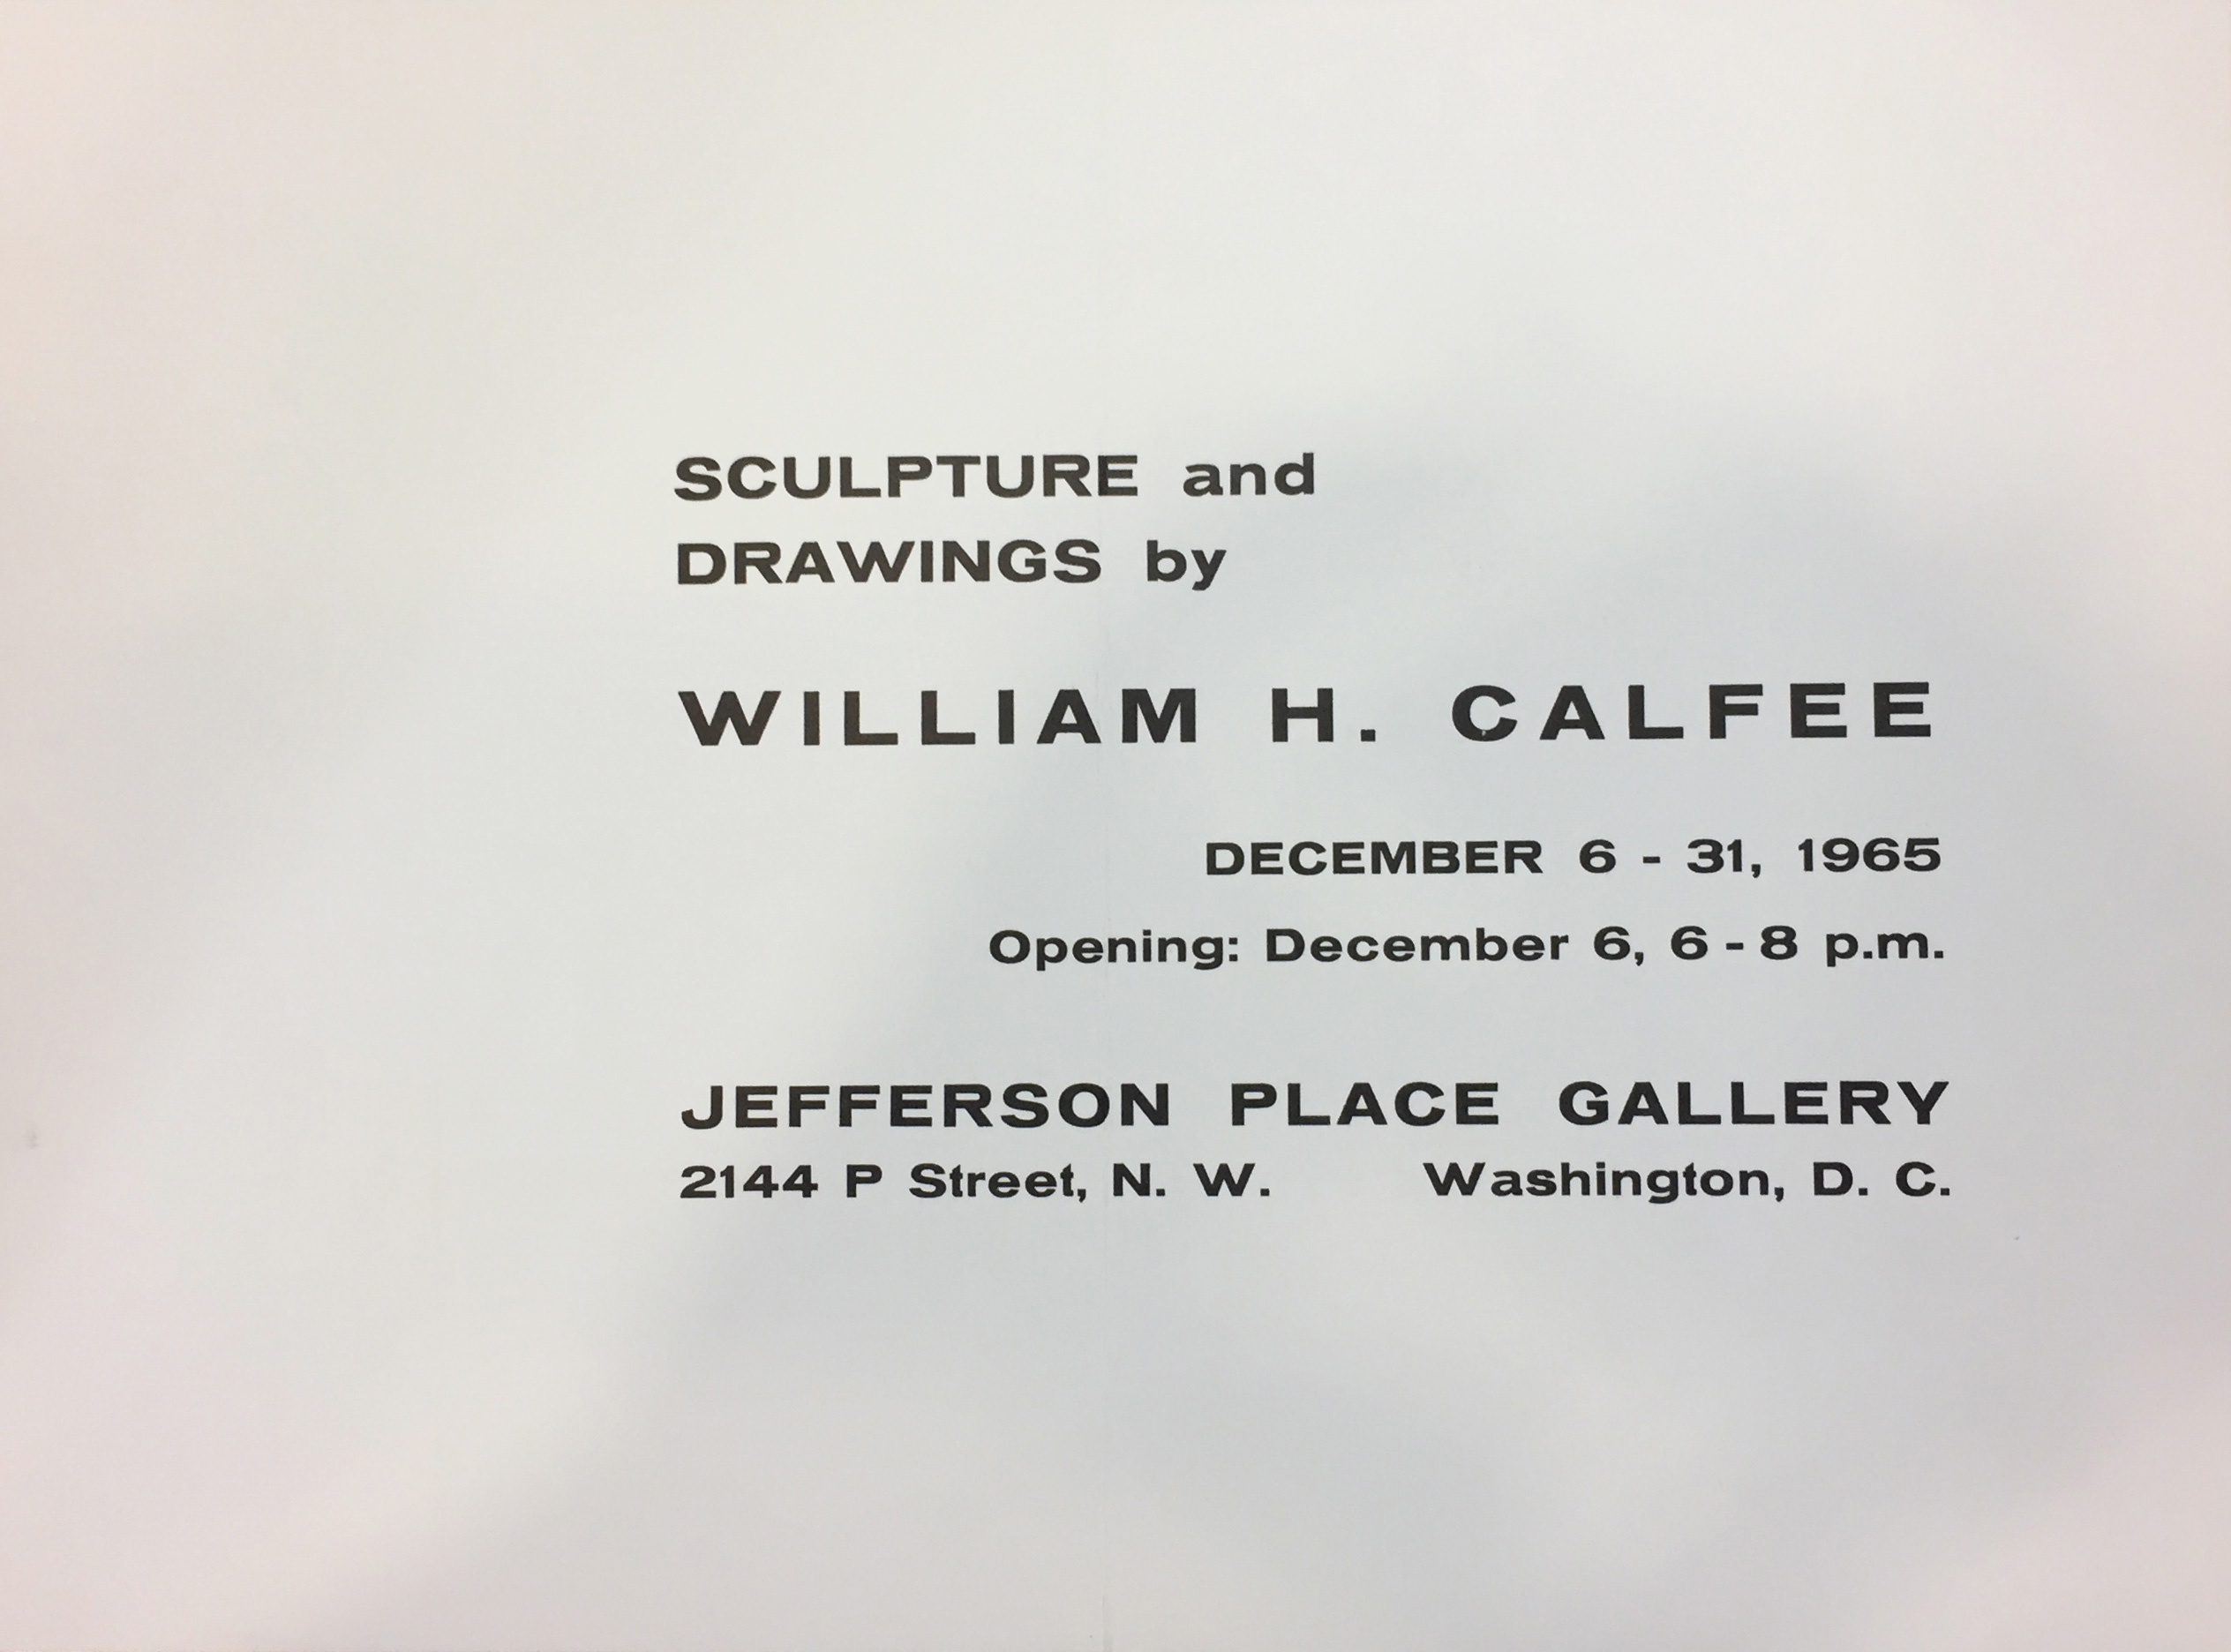 William Calfee 1965 exhibit announcement